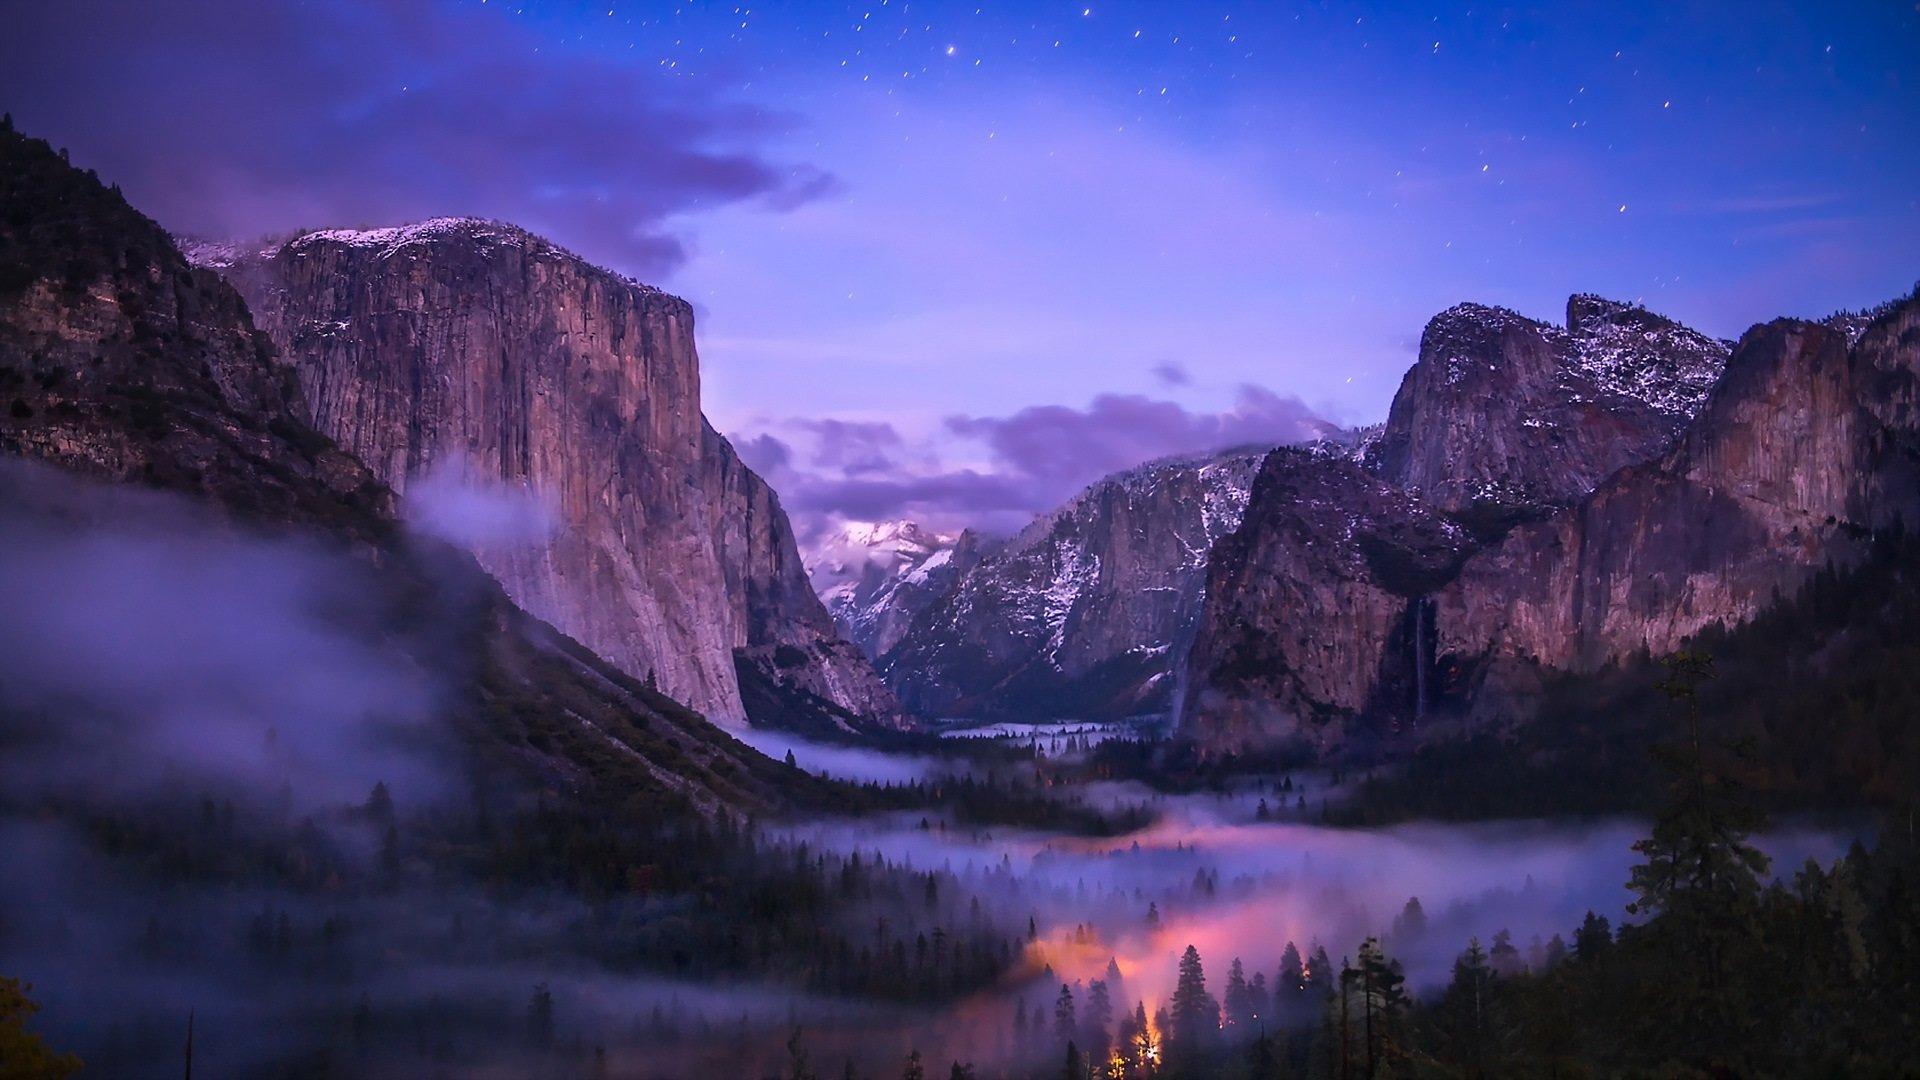 Yosemite National Park wallpaper 1920x1080 Full HD (1080p) desktop